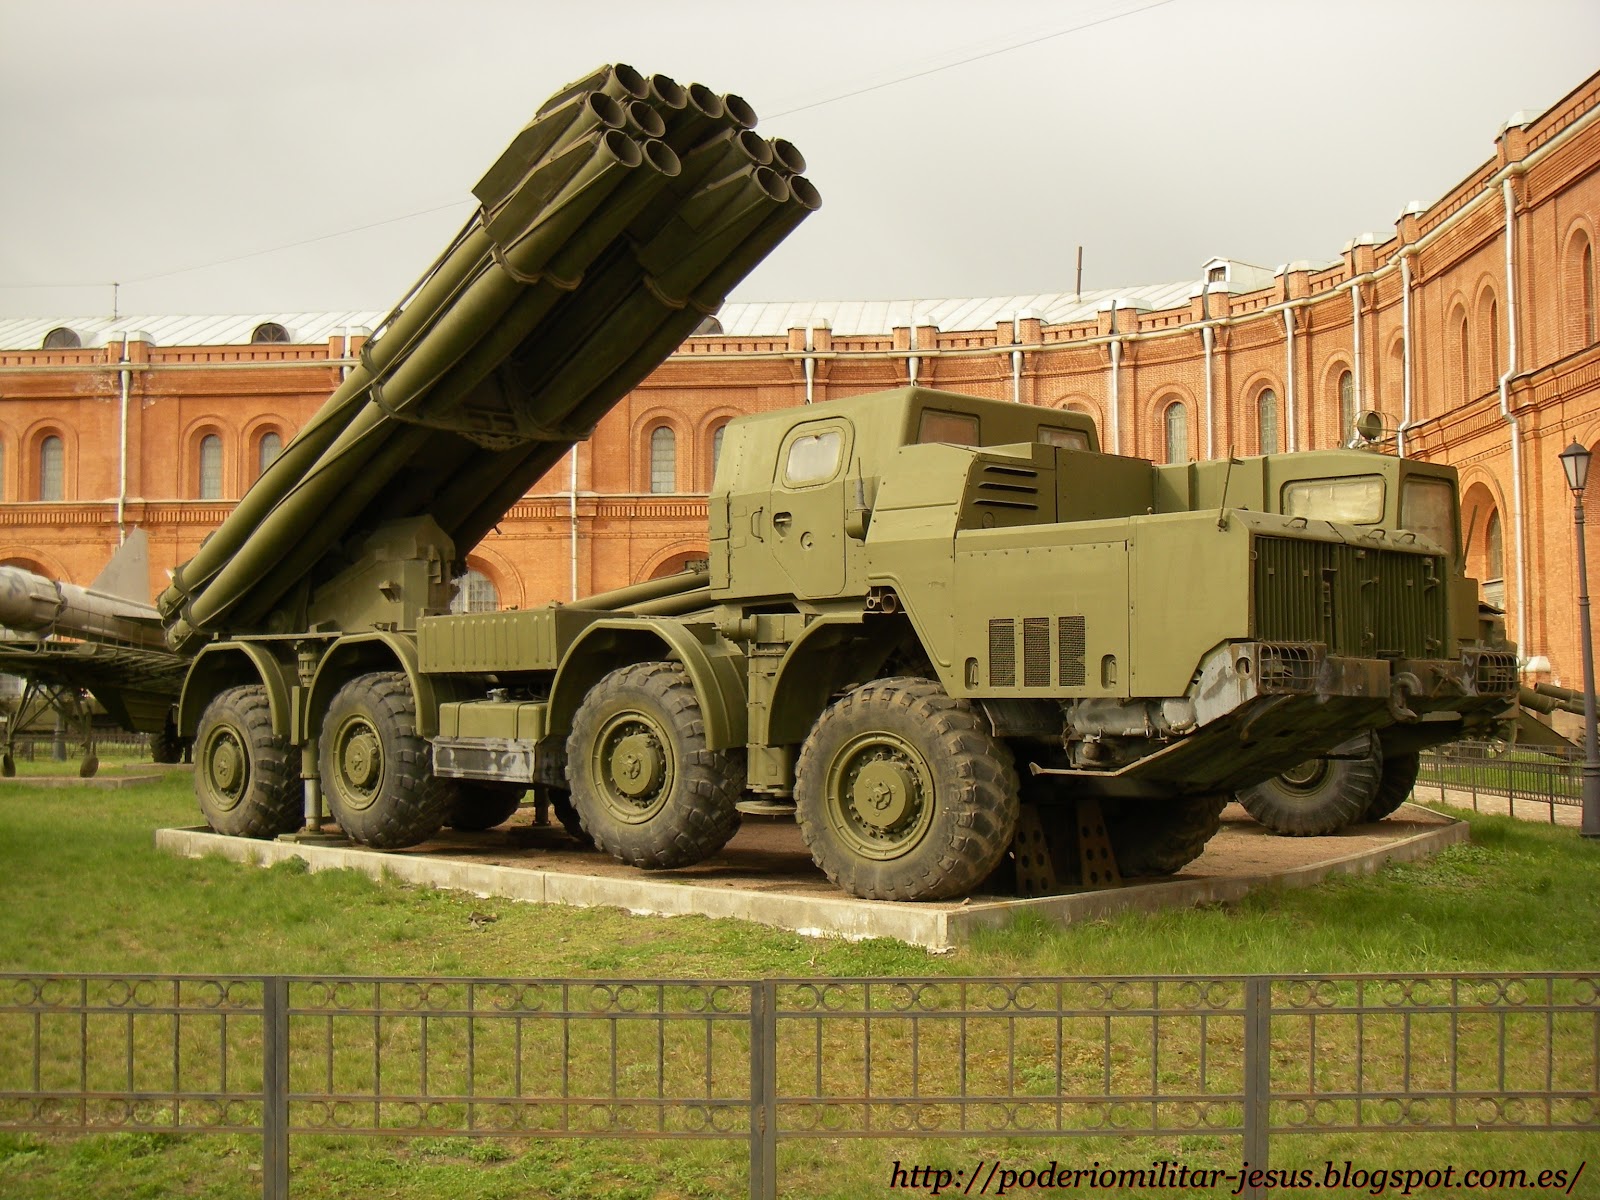 Các hệ thống rocket phóng loạt gốc Nga này đã giành được sự thừa nhận không chỉ trong quân đội Trung Quốc mà cả trê thị trường quốc tế. Năm 2013-2014, Trung Quốc đã bán mấy chục hệ thống rocket phóng loạt có tên xuất khẩu là AR-2 cho Sudan và Morocco.